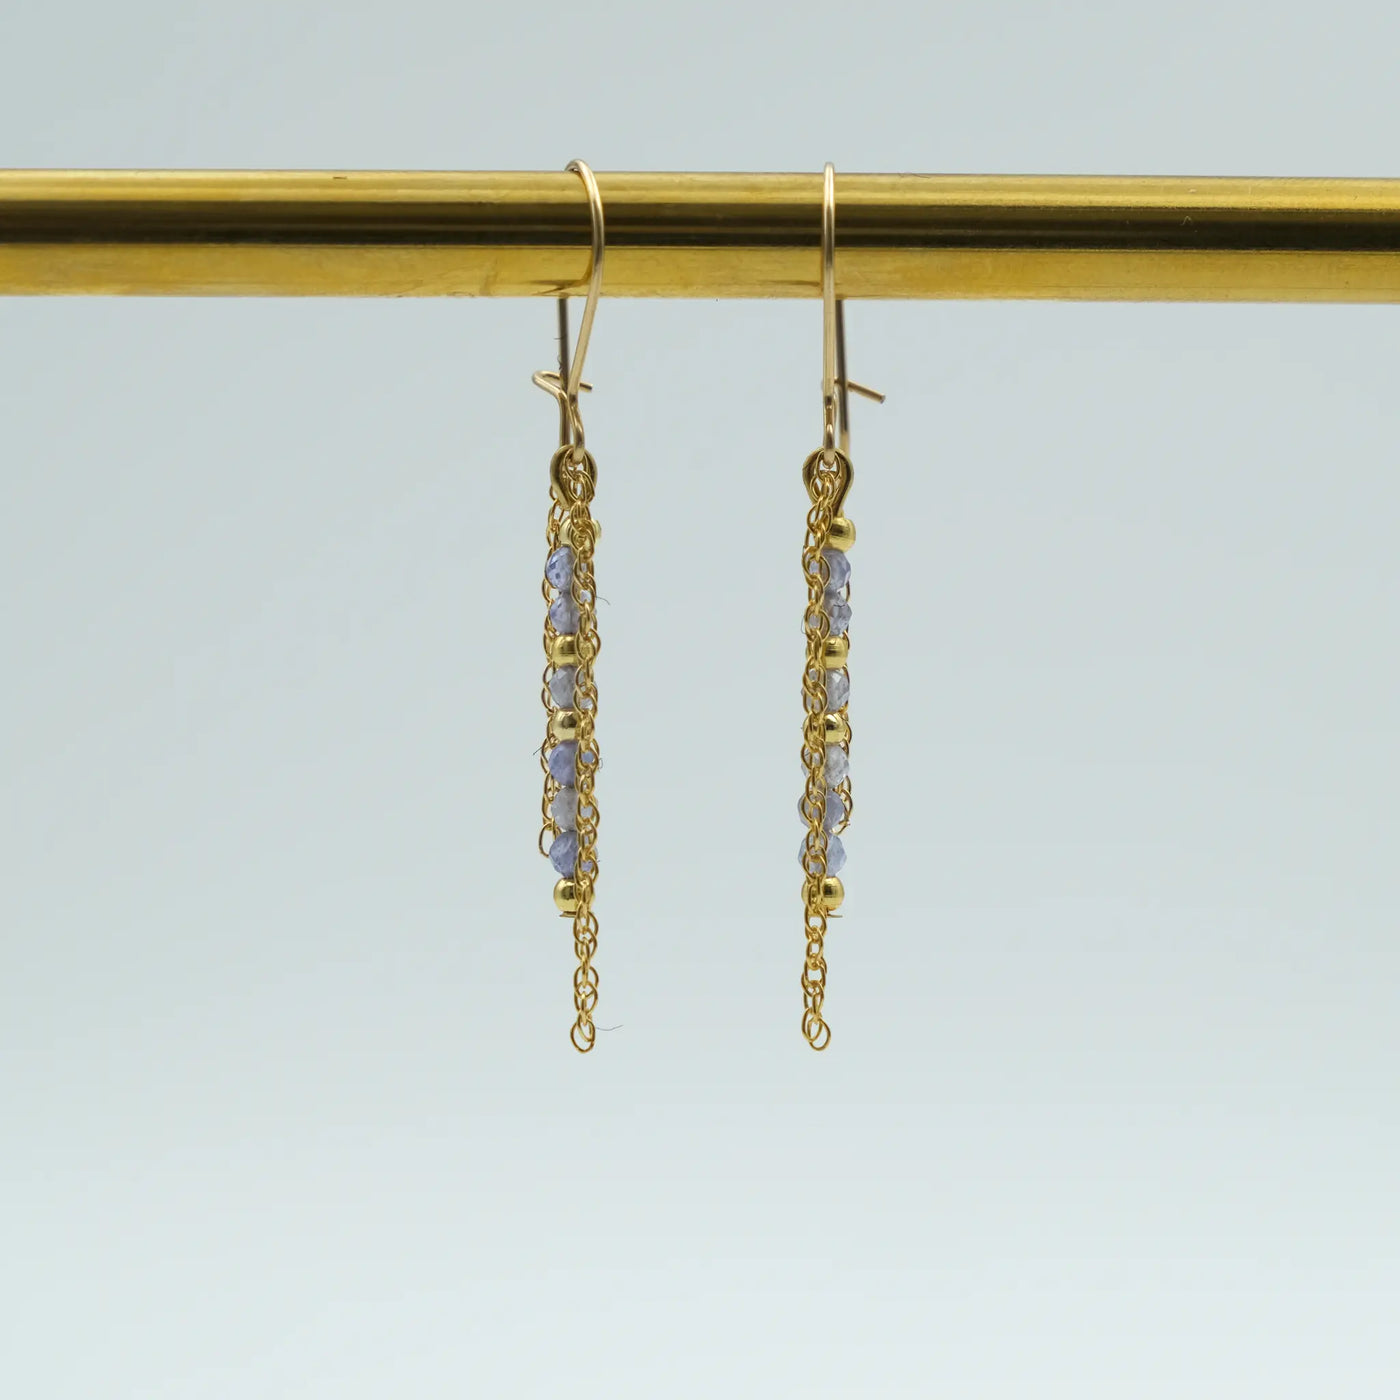 Edelsteinohrringe mit 2 Millimeter großen, facettierten Tansanit Perlen und 14 Karat vergoldeten Perlen.